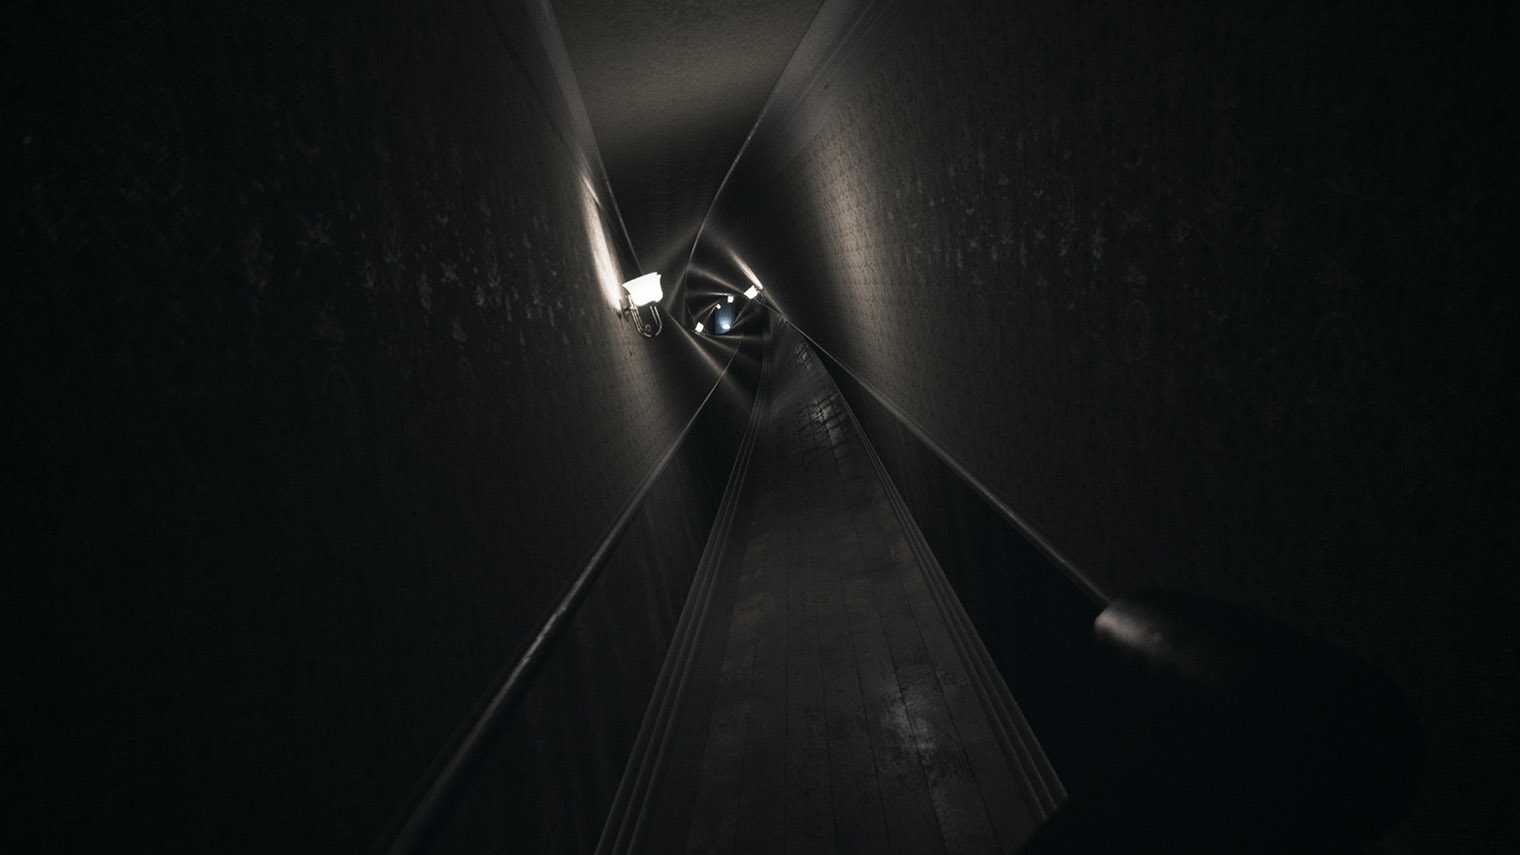 Visage вдохновлен P.T. — демоверсией невышедшей Silent Hills от Хидео Кодзимы. Источник: SadSquare Studio